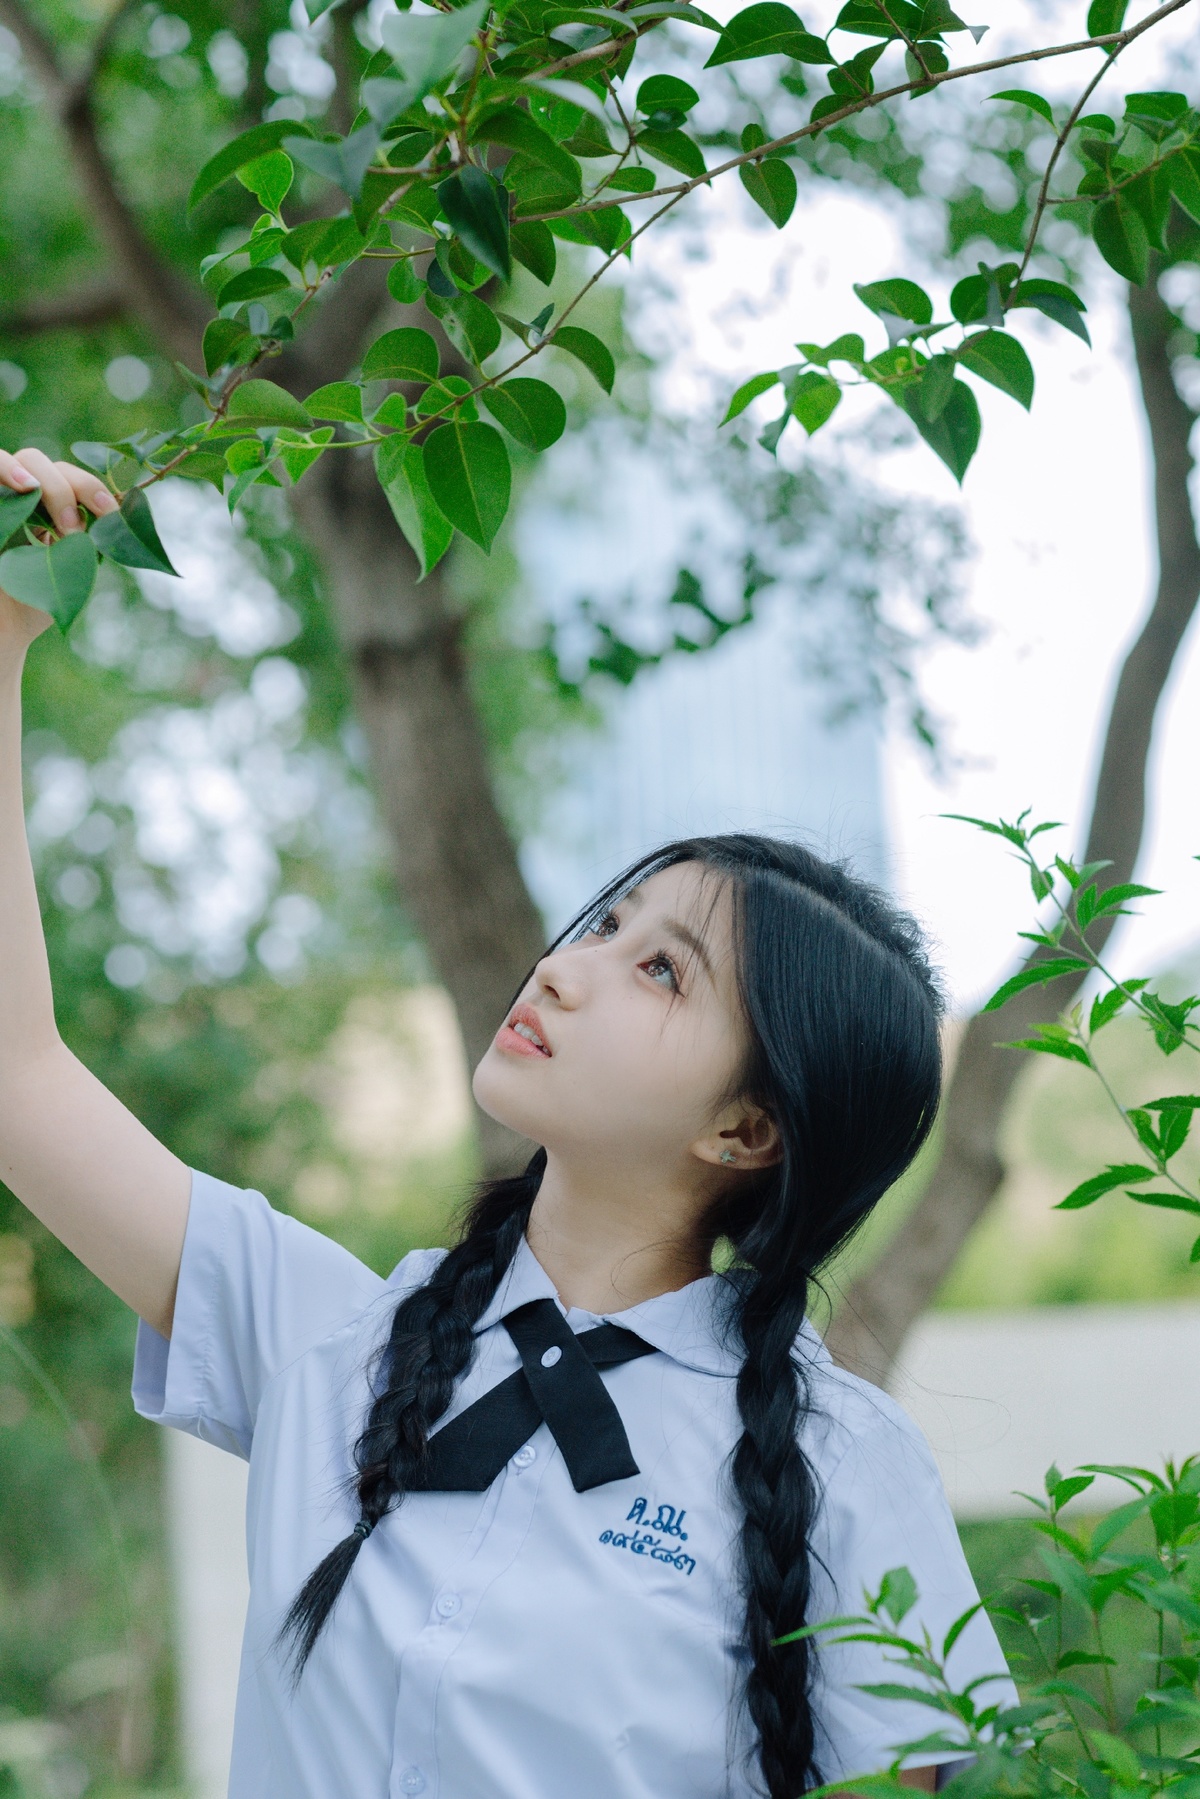 一个穿着校服的小女孩拿着植物的枝条